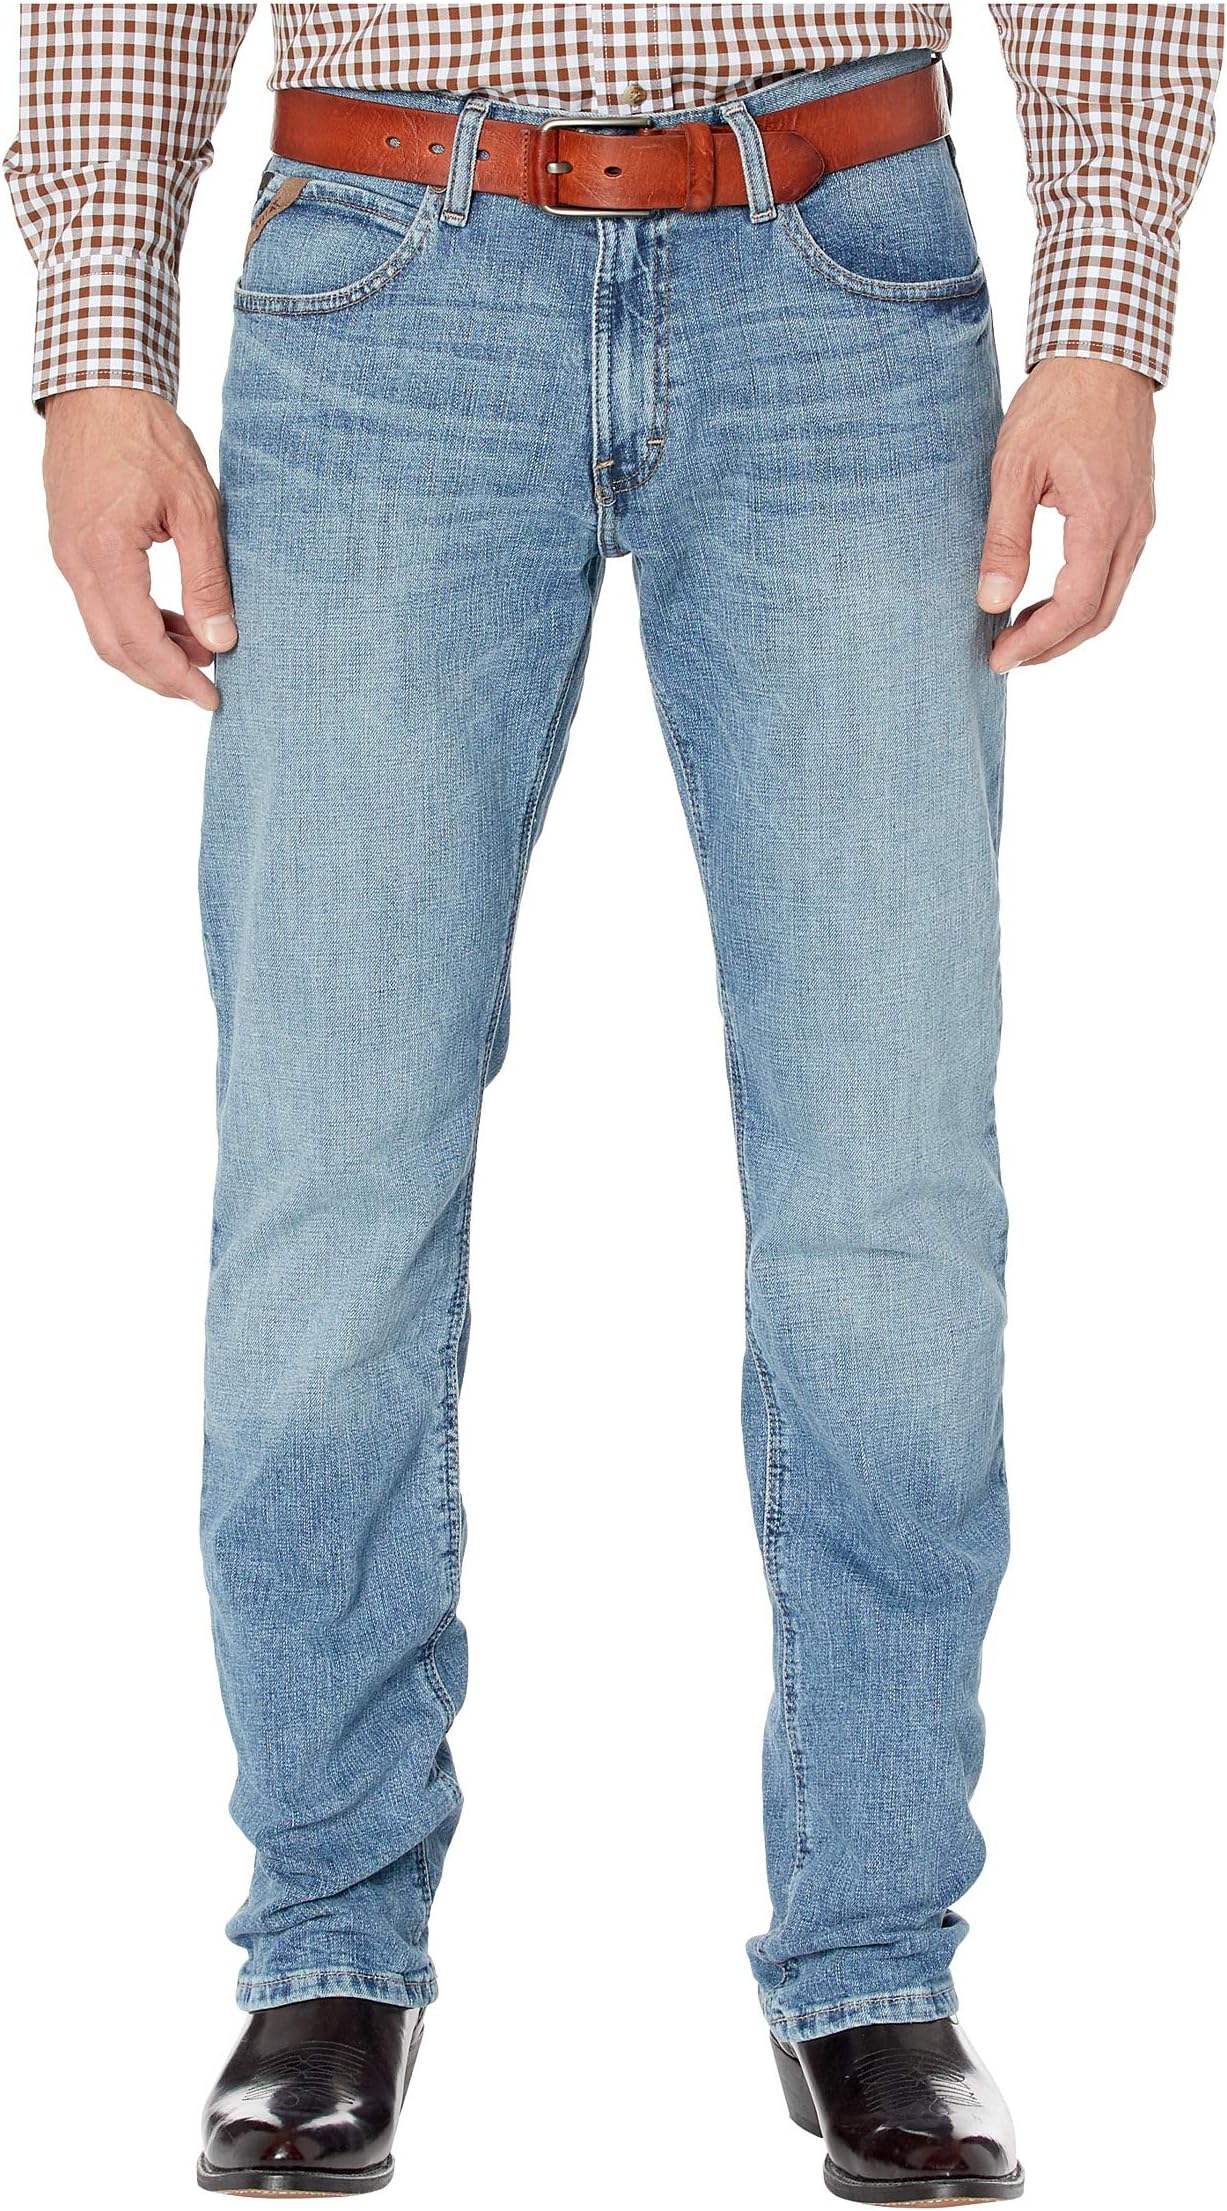 Джинсы M4 Low Rise Stackable Straight Leg Jeans in Sawyer Ariat, цвет Sawyer шина sam обычная sawyer